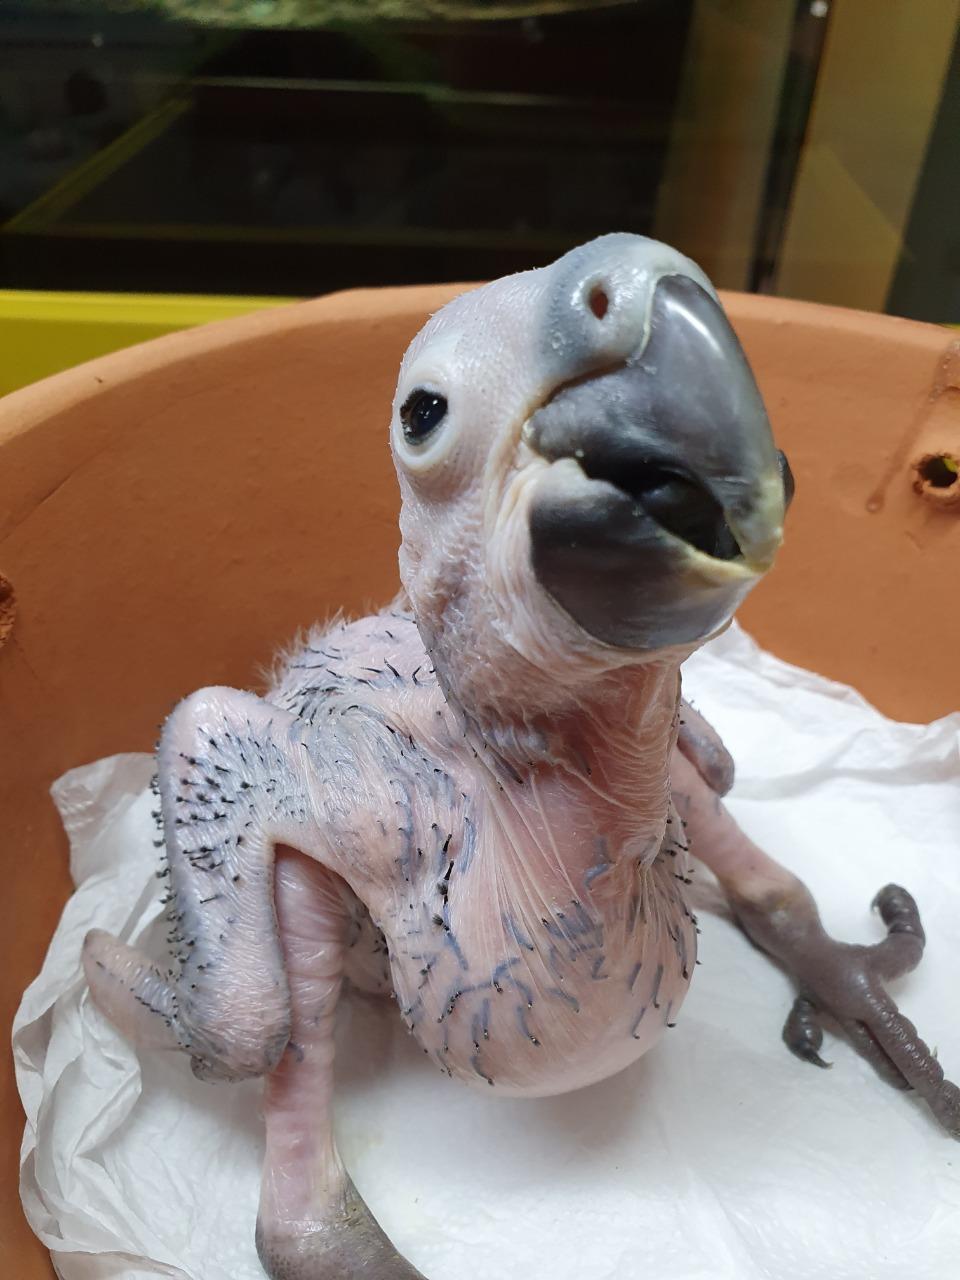  Zooparque de Itatiba registra nascimento de filhotes de arara-azul pela primeira vez